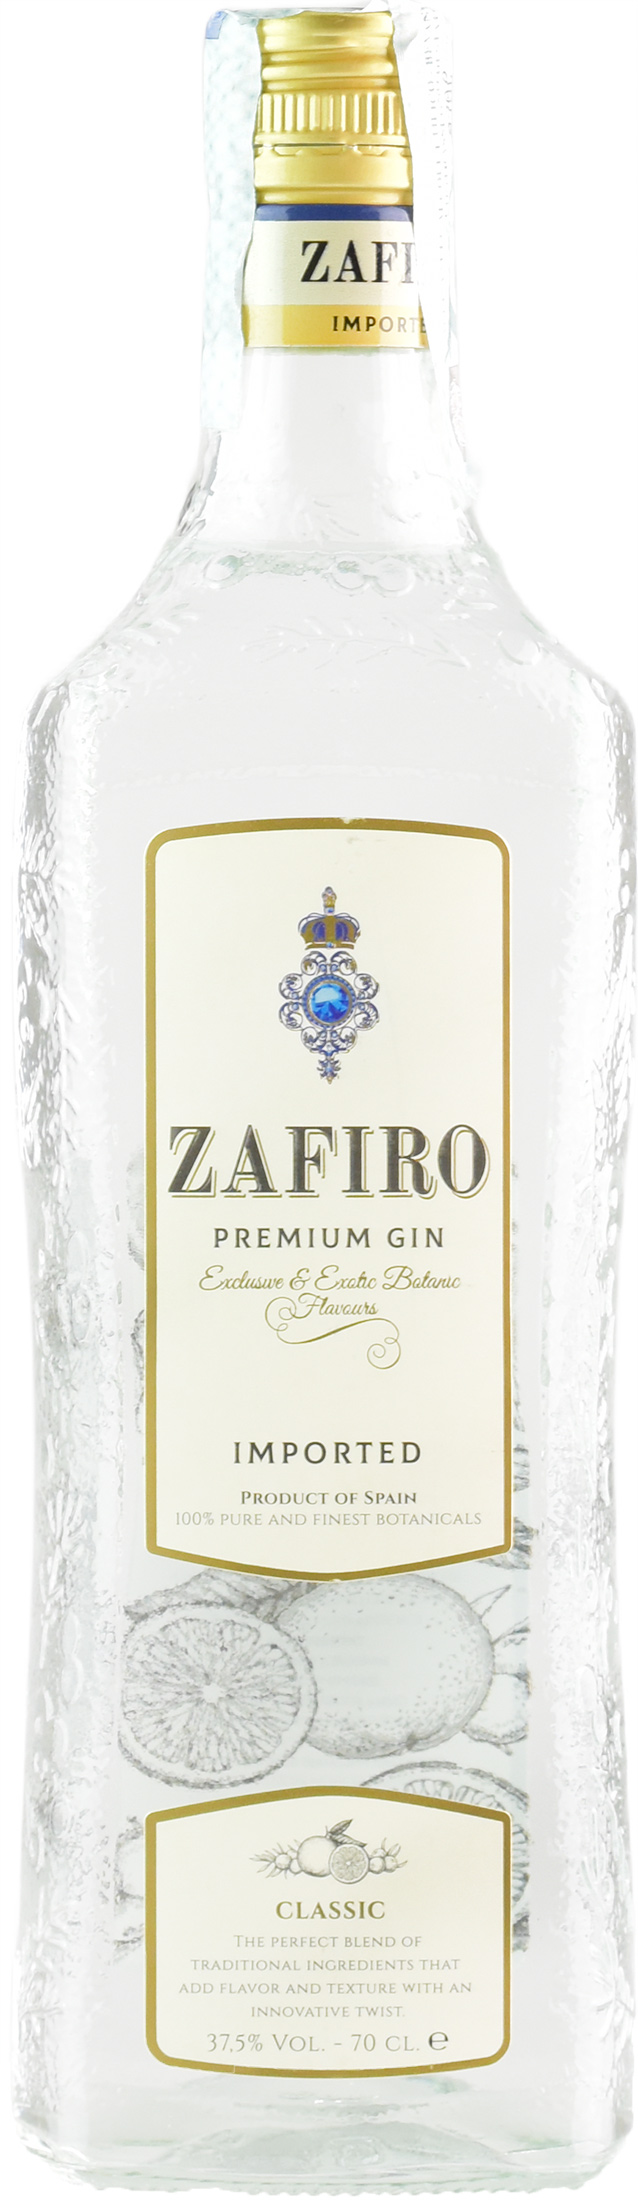 William & Humbert Zafiro Classic Gin